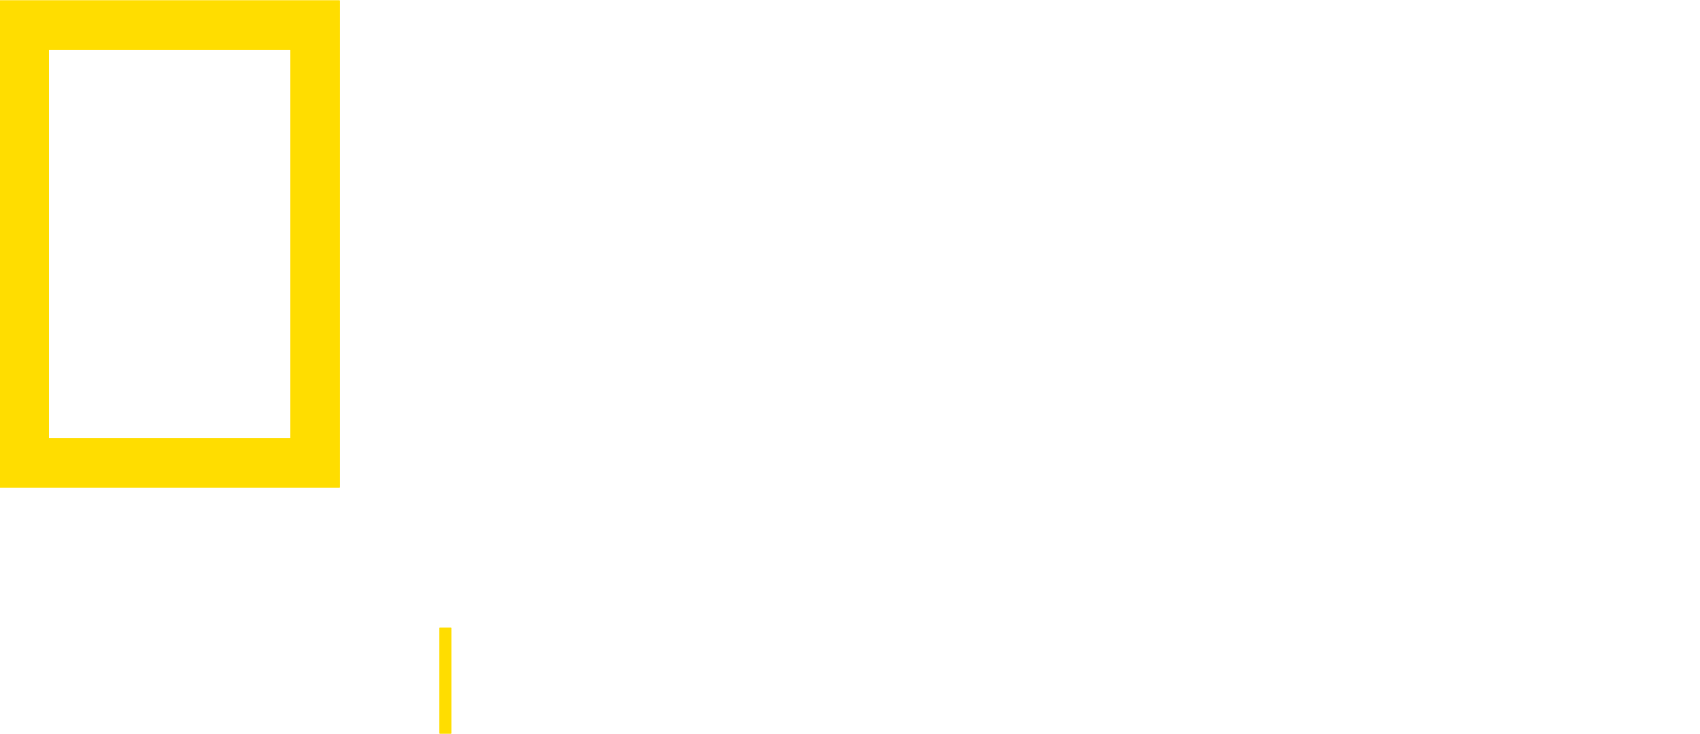 Nat Geo Now